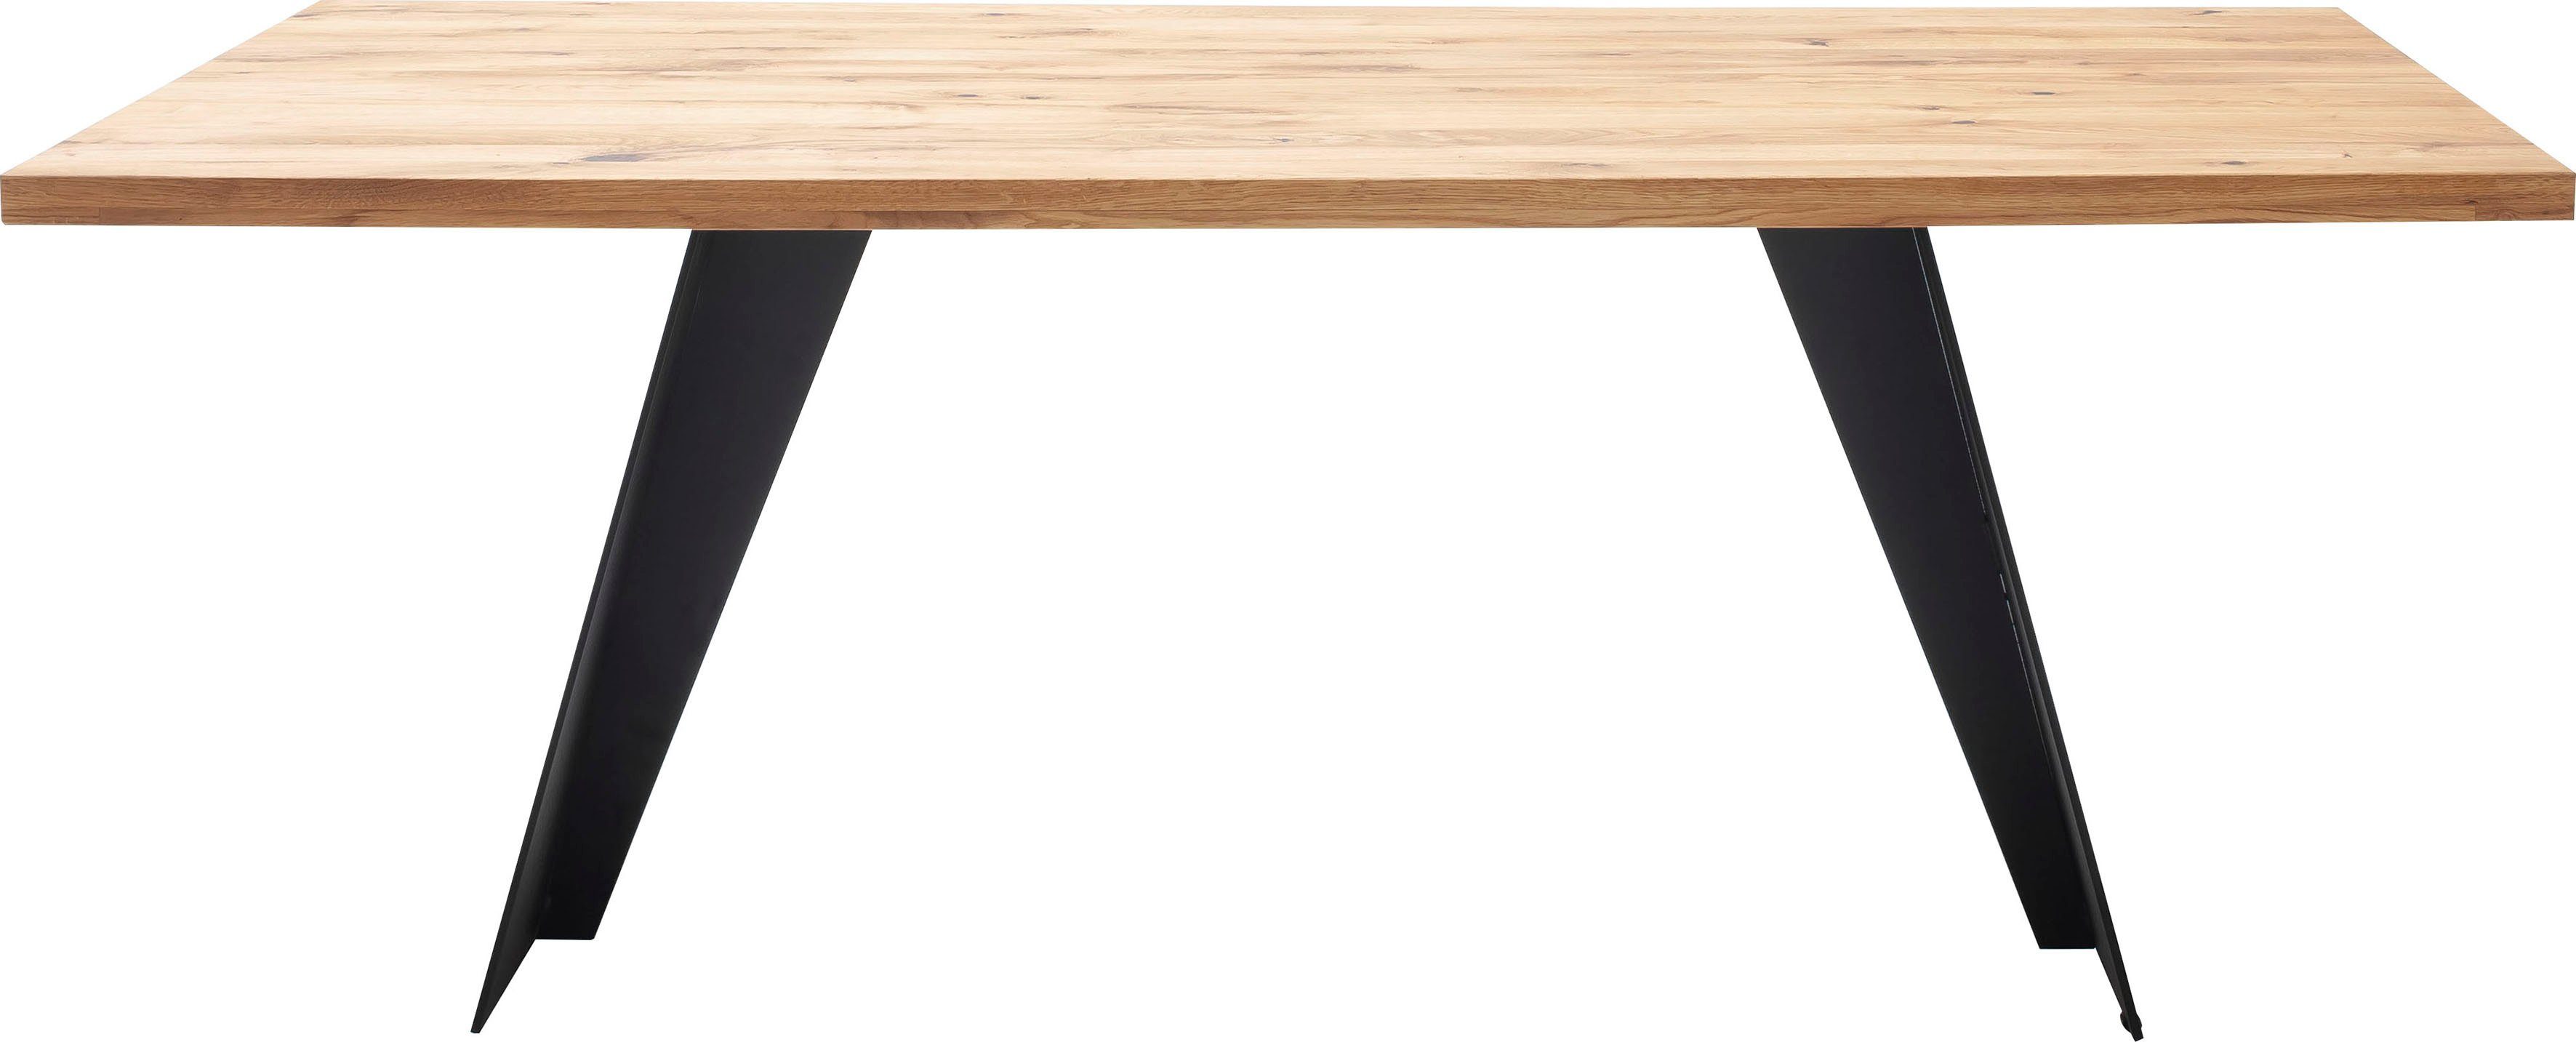 MCA furniture Esstisch Goa, Massivholz in Esstisch Massiv Tisch, Wildeiche FSC-Zertifiziert